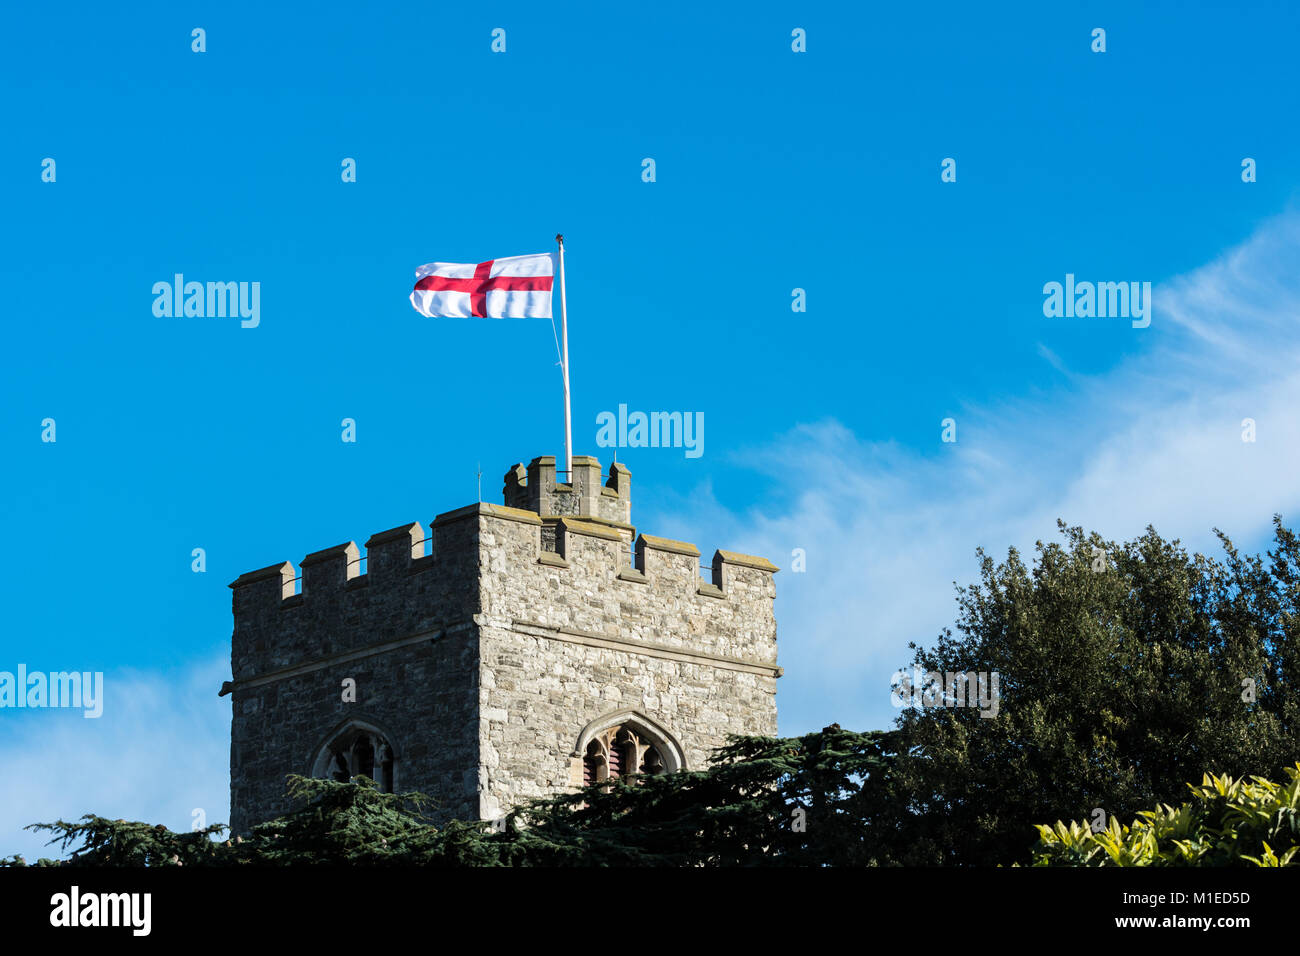 Dans un parfait ciel bleu, le drapeau de St George vole sur la tour de l'église St Clements, Leigh on Sea Banque D'Images